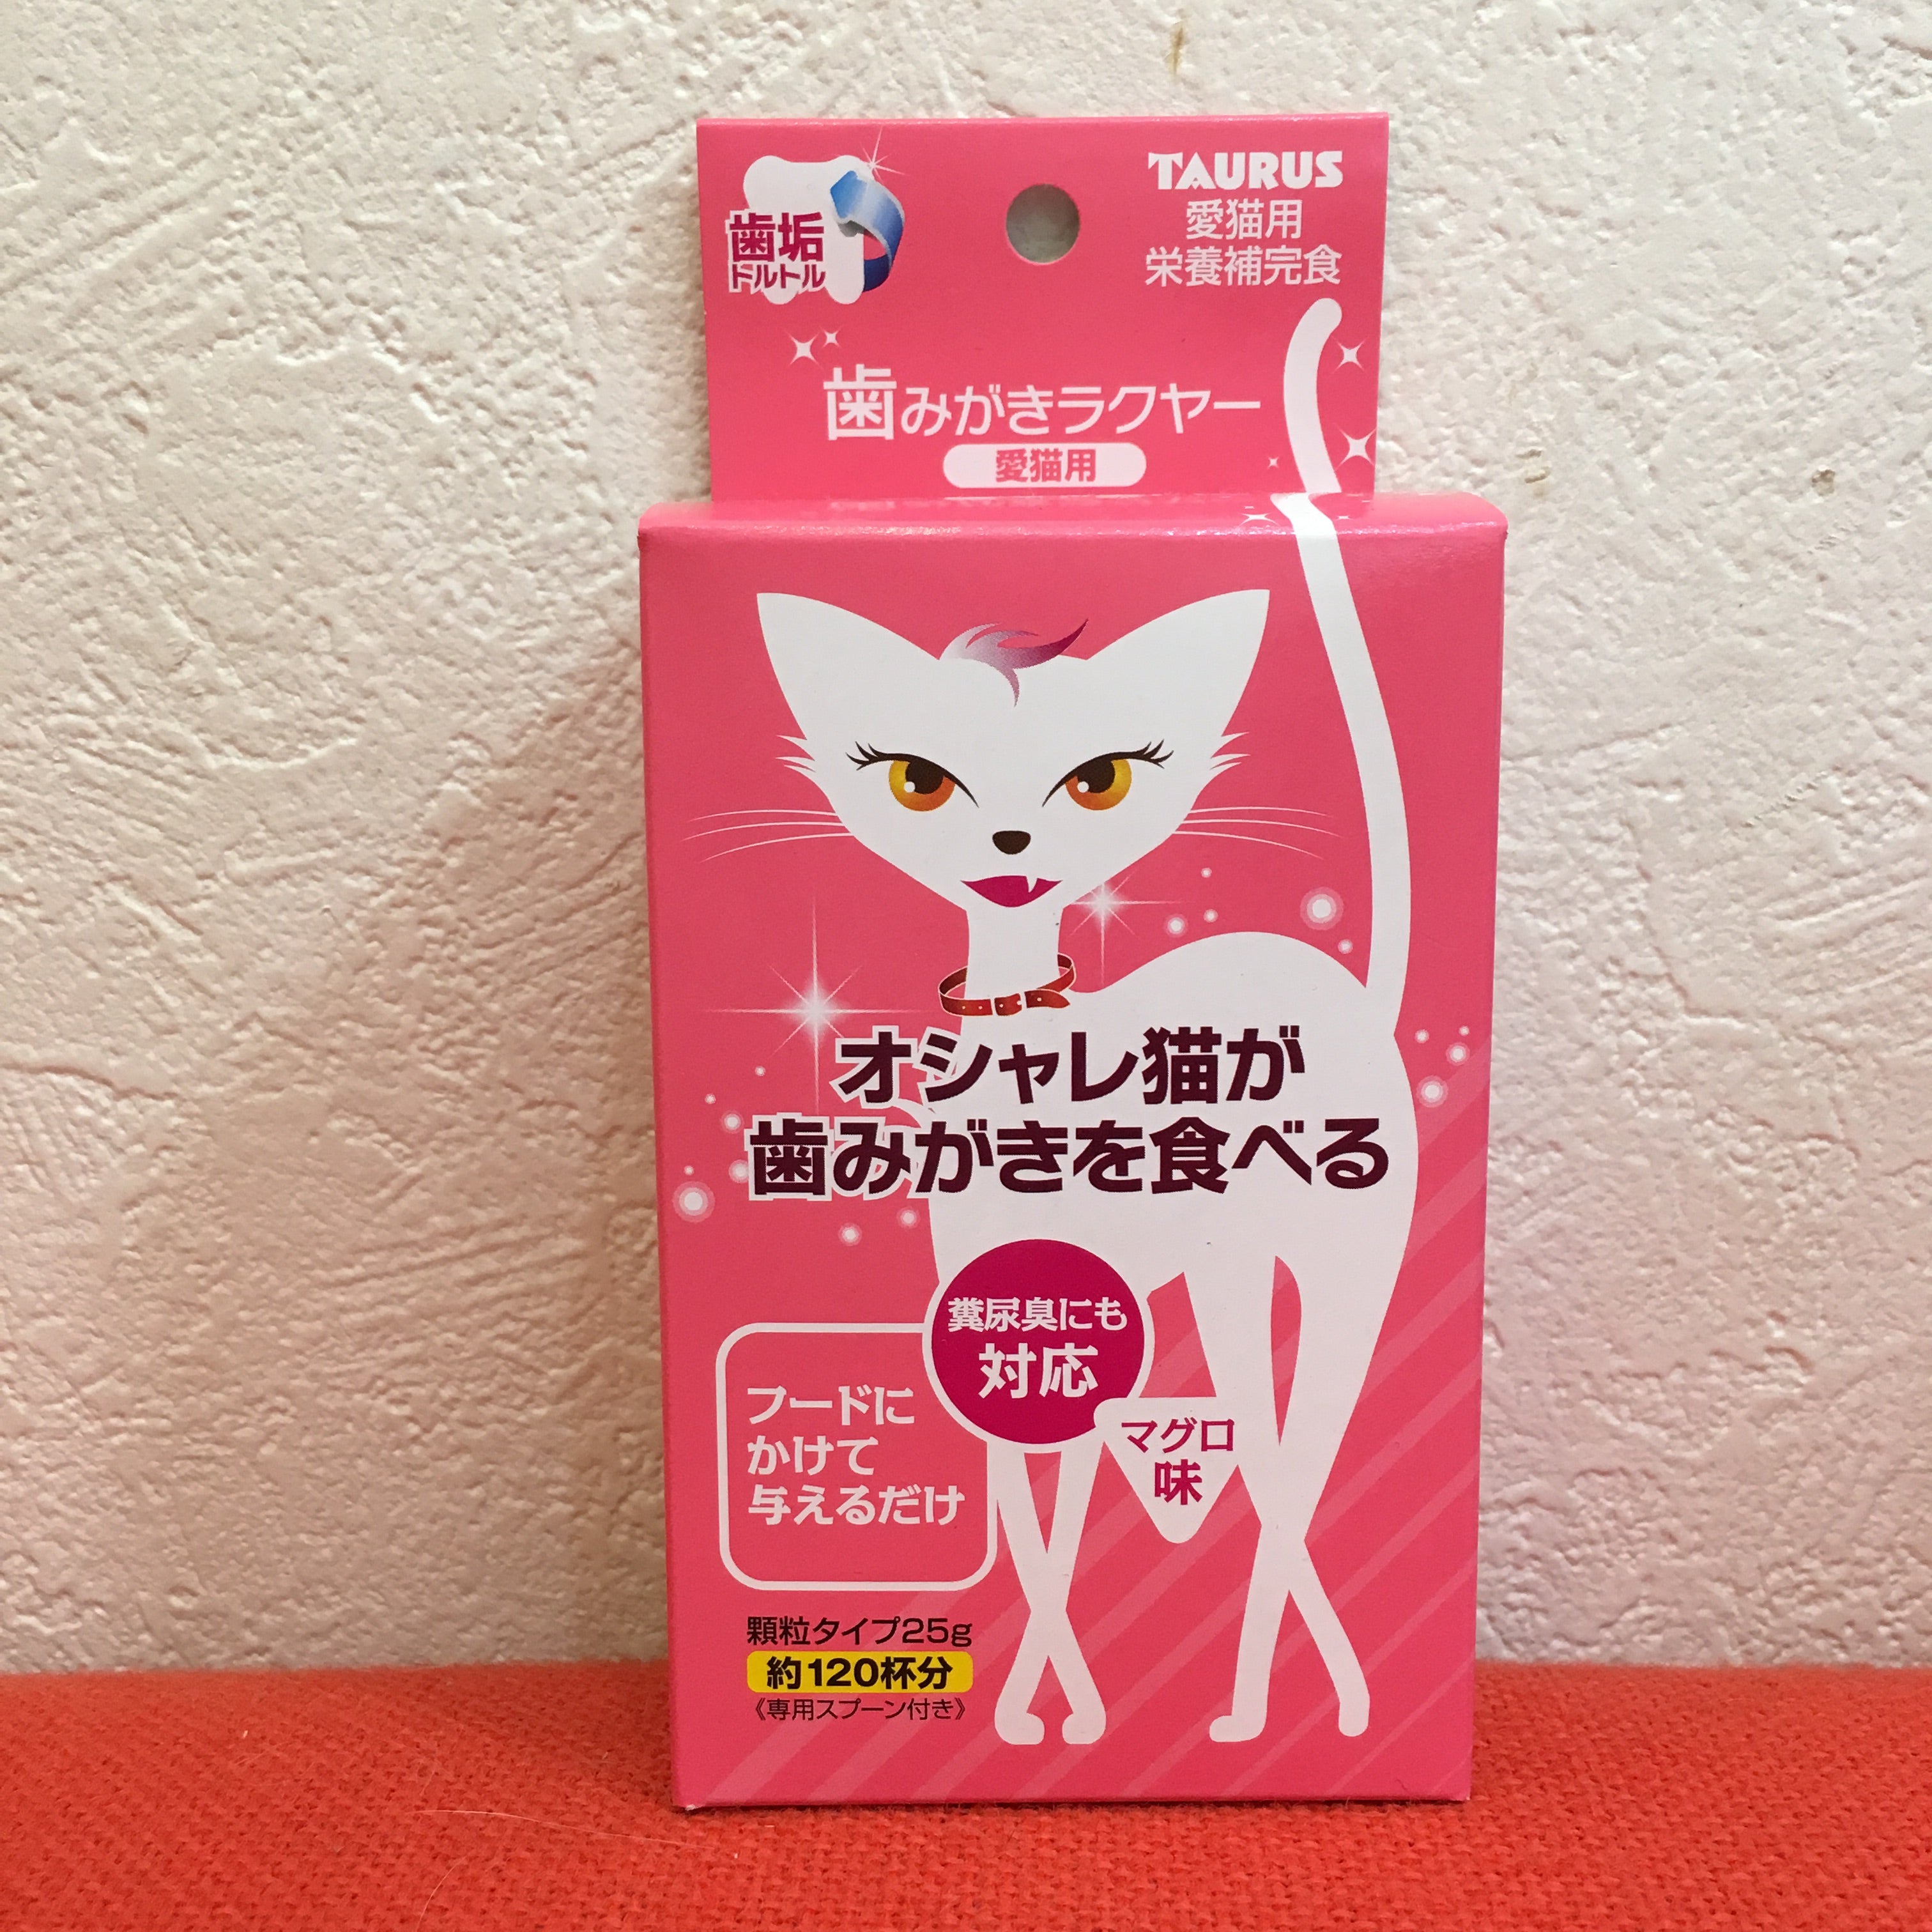 歯みがきラクヤー [愛猫用] – ネコソダテ®日本で唯一のまじめな首輪®専門店